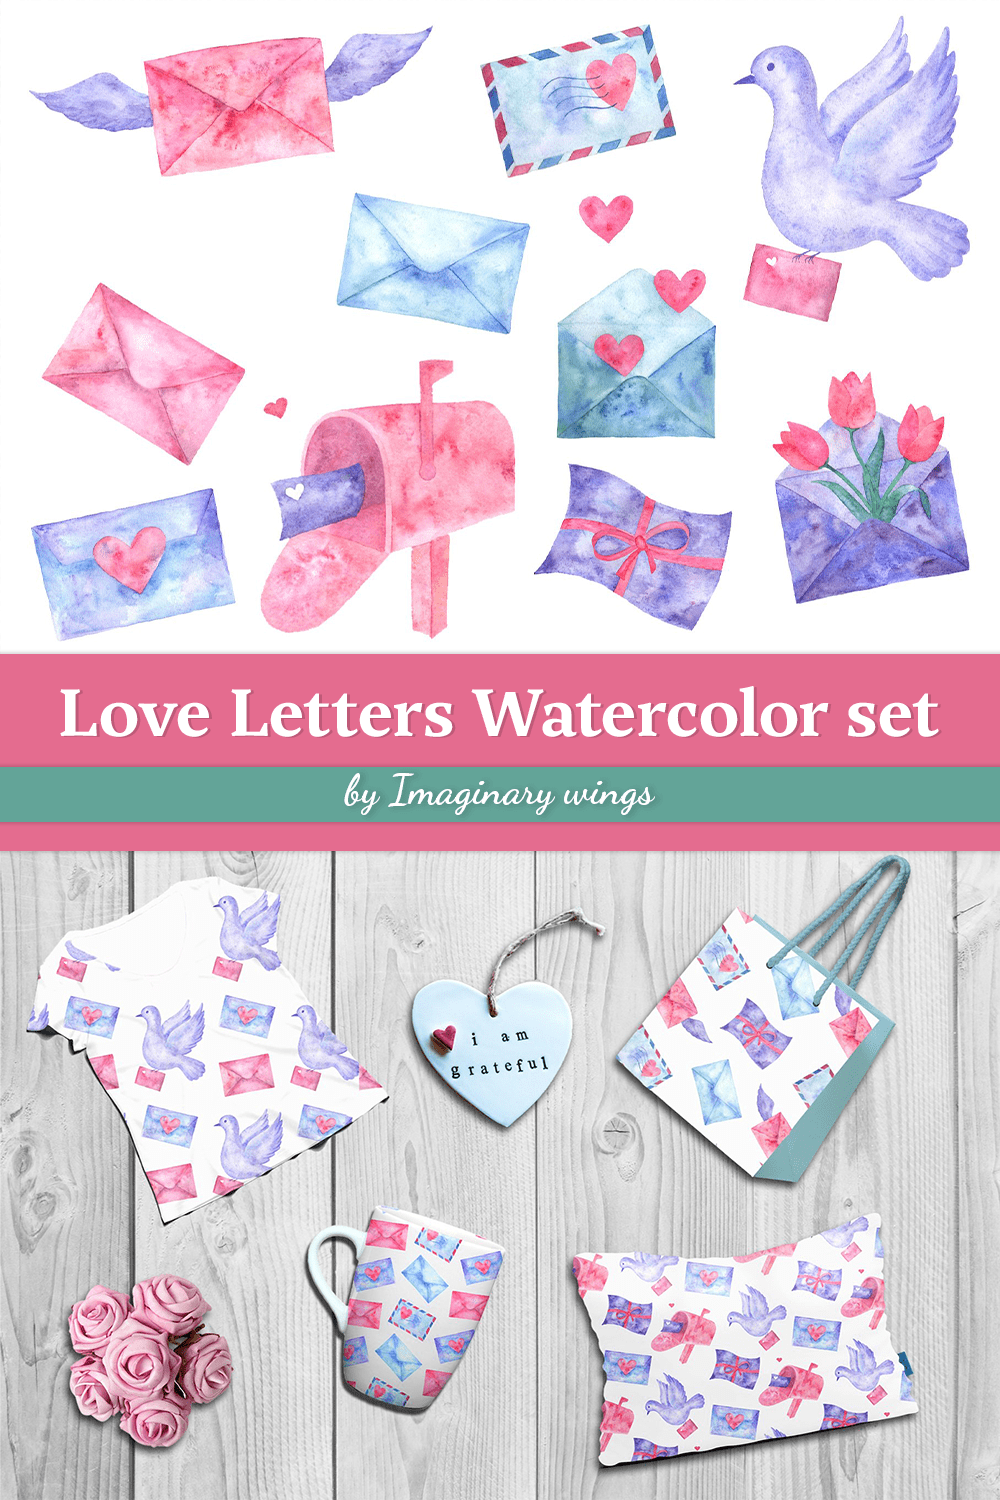 Love Letters. Watercolor Set pinterest image.